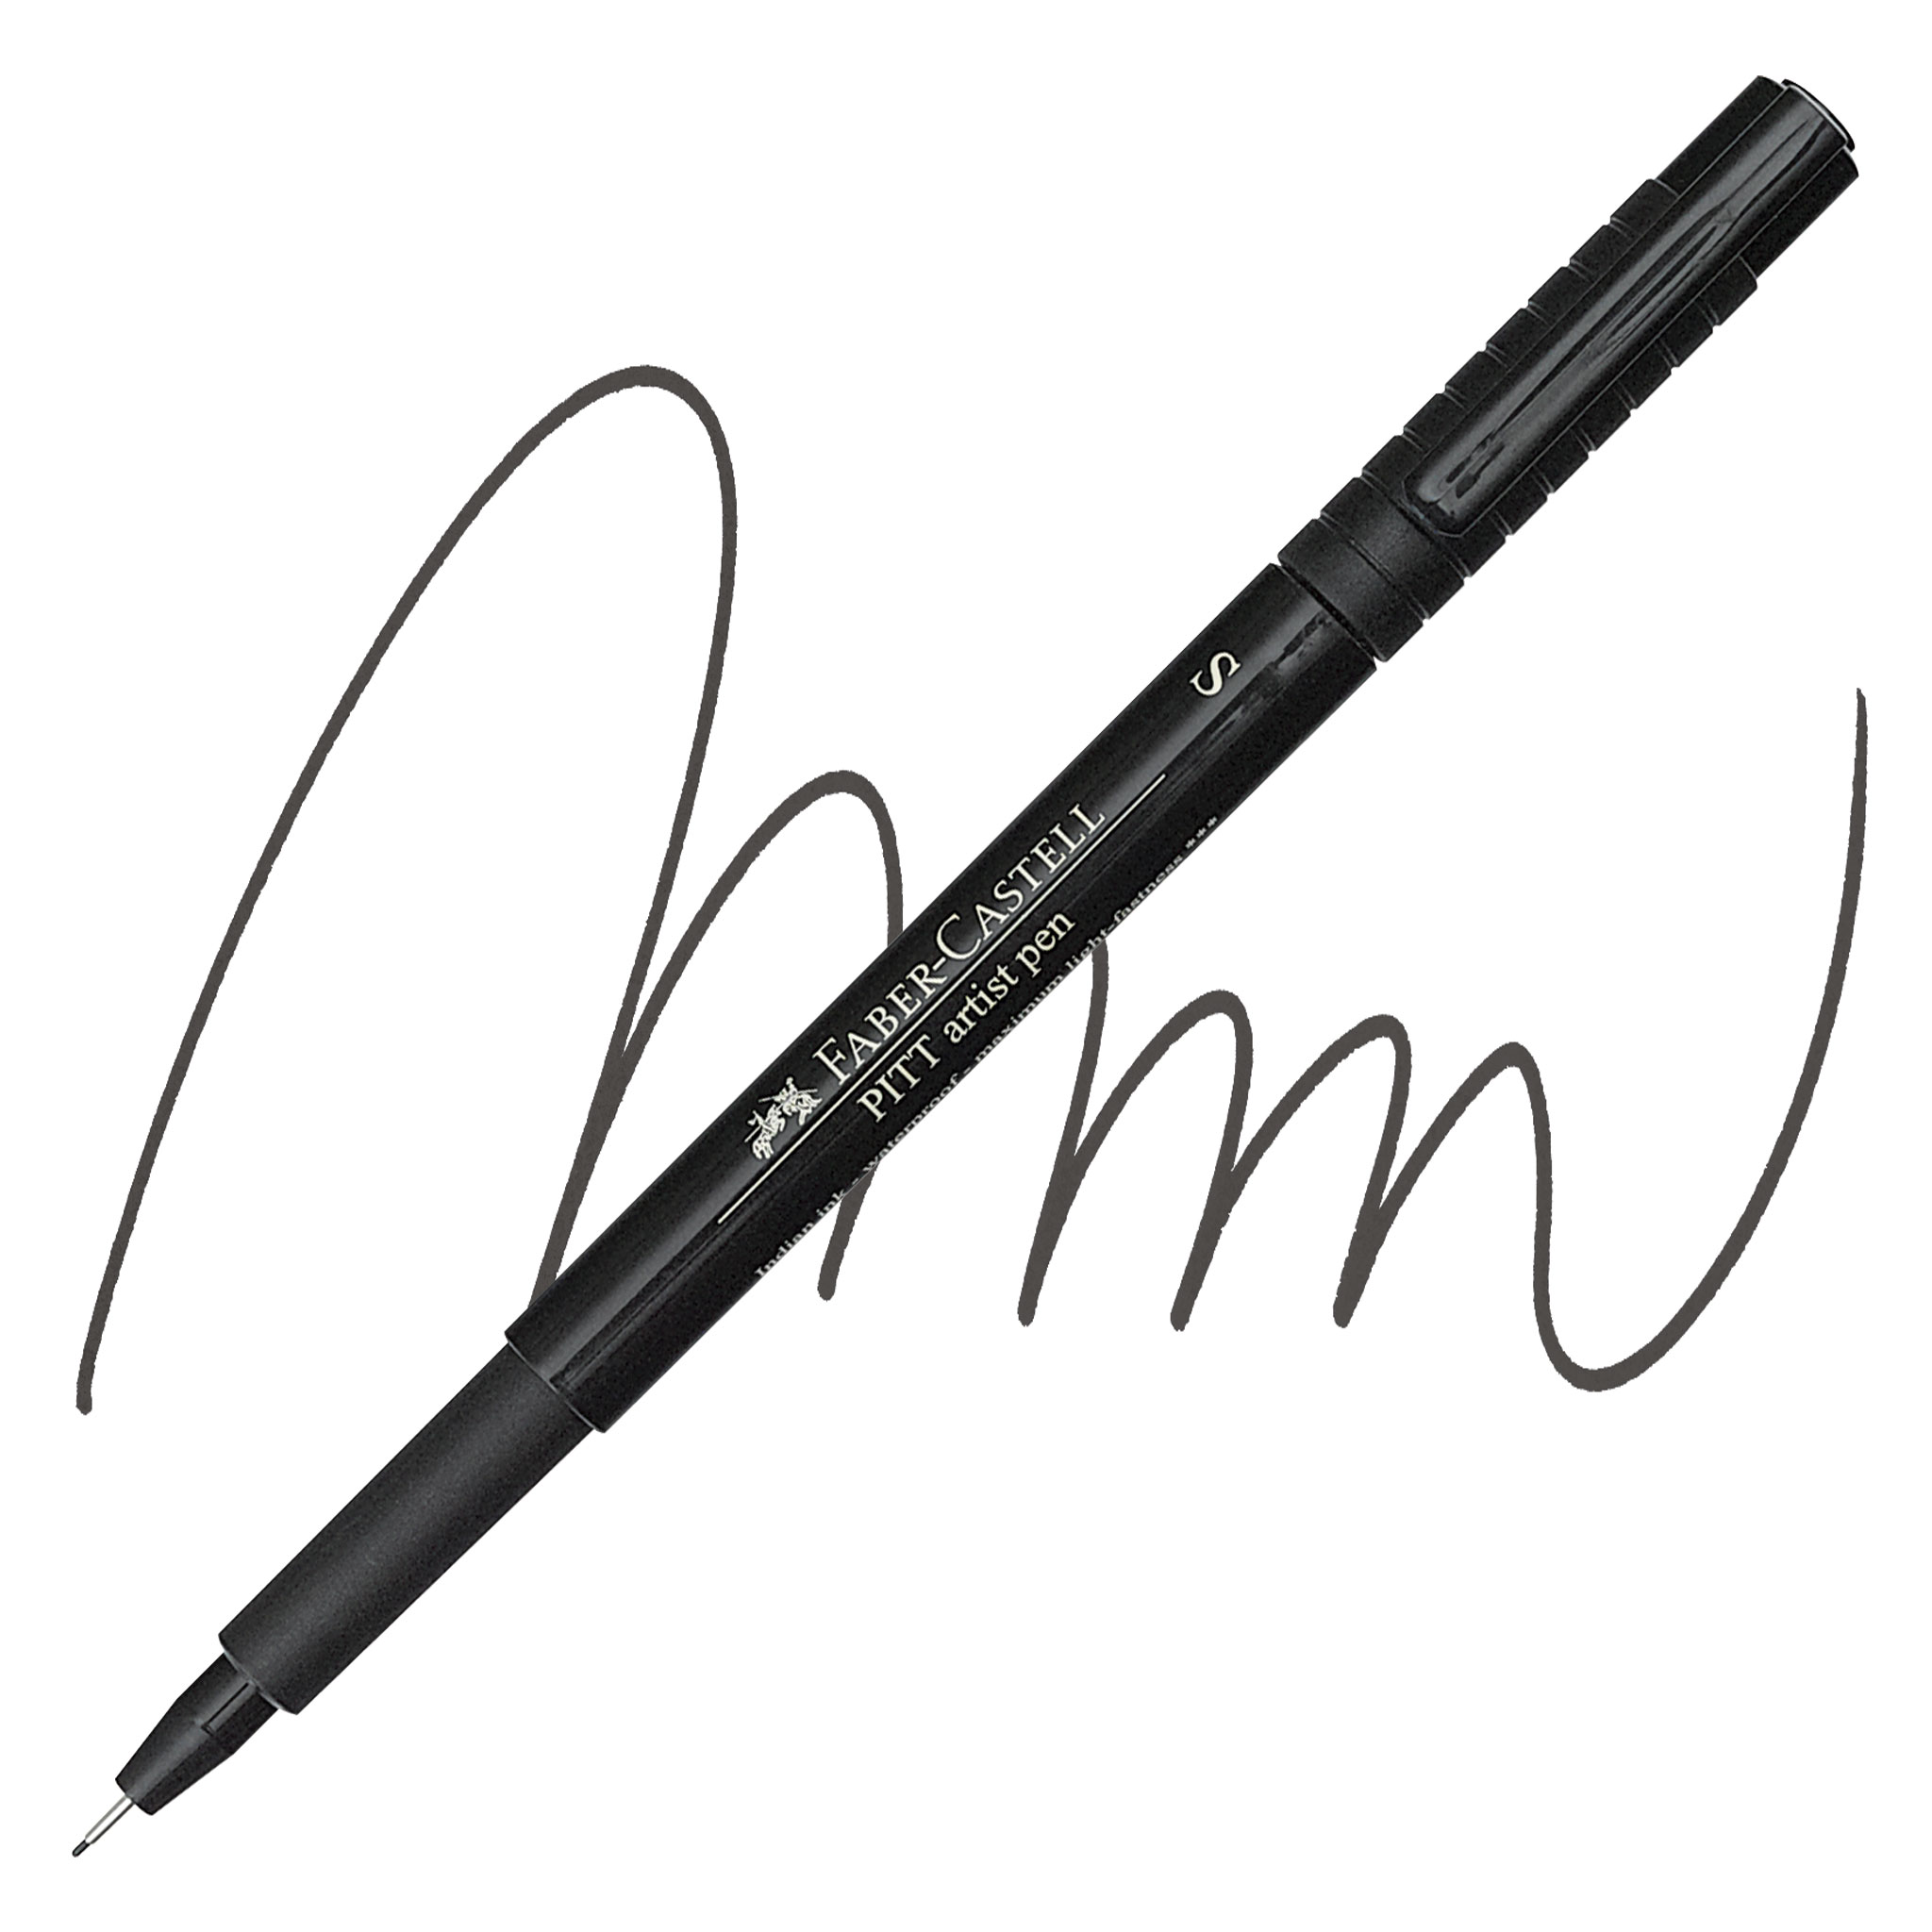 PITT Artist Brush Pens – ARCH Art Supplies